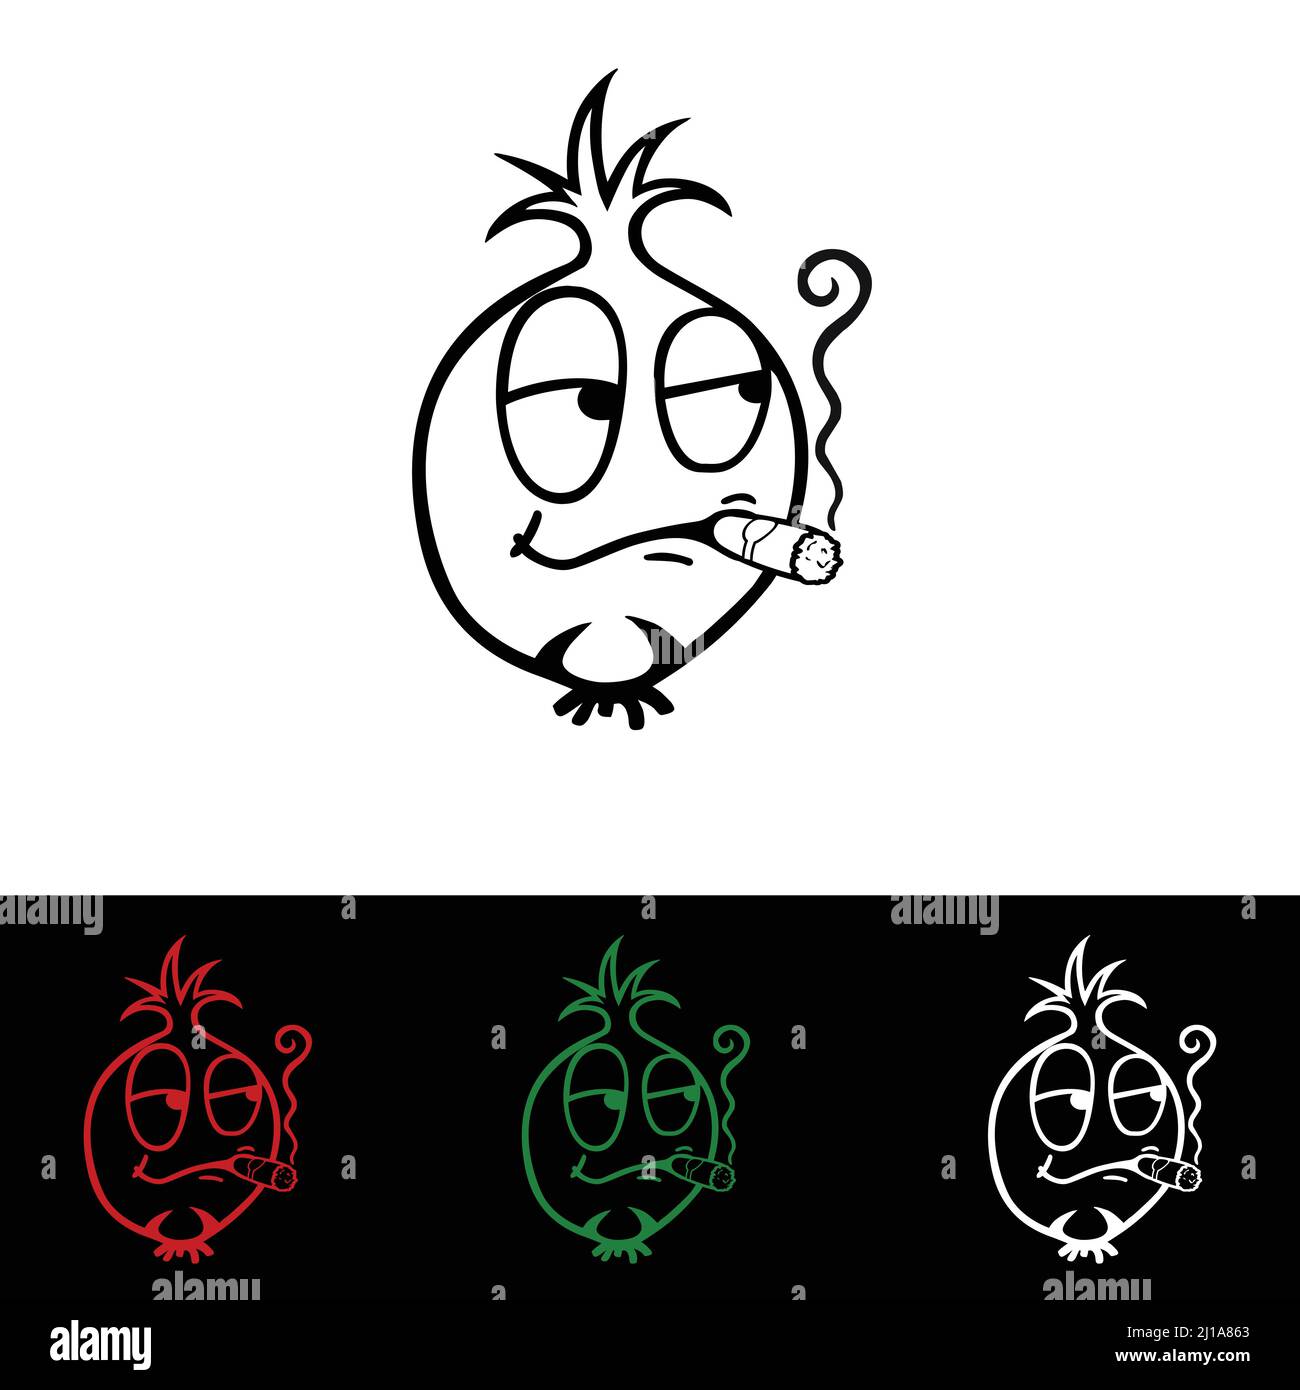 Onion head sticker & logo vegetables vector & illustration design Stock Vector